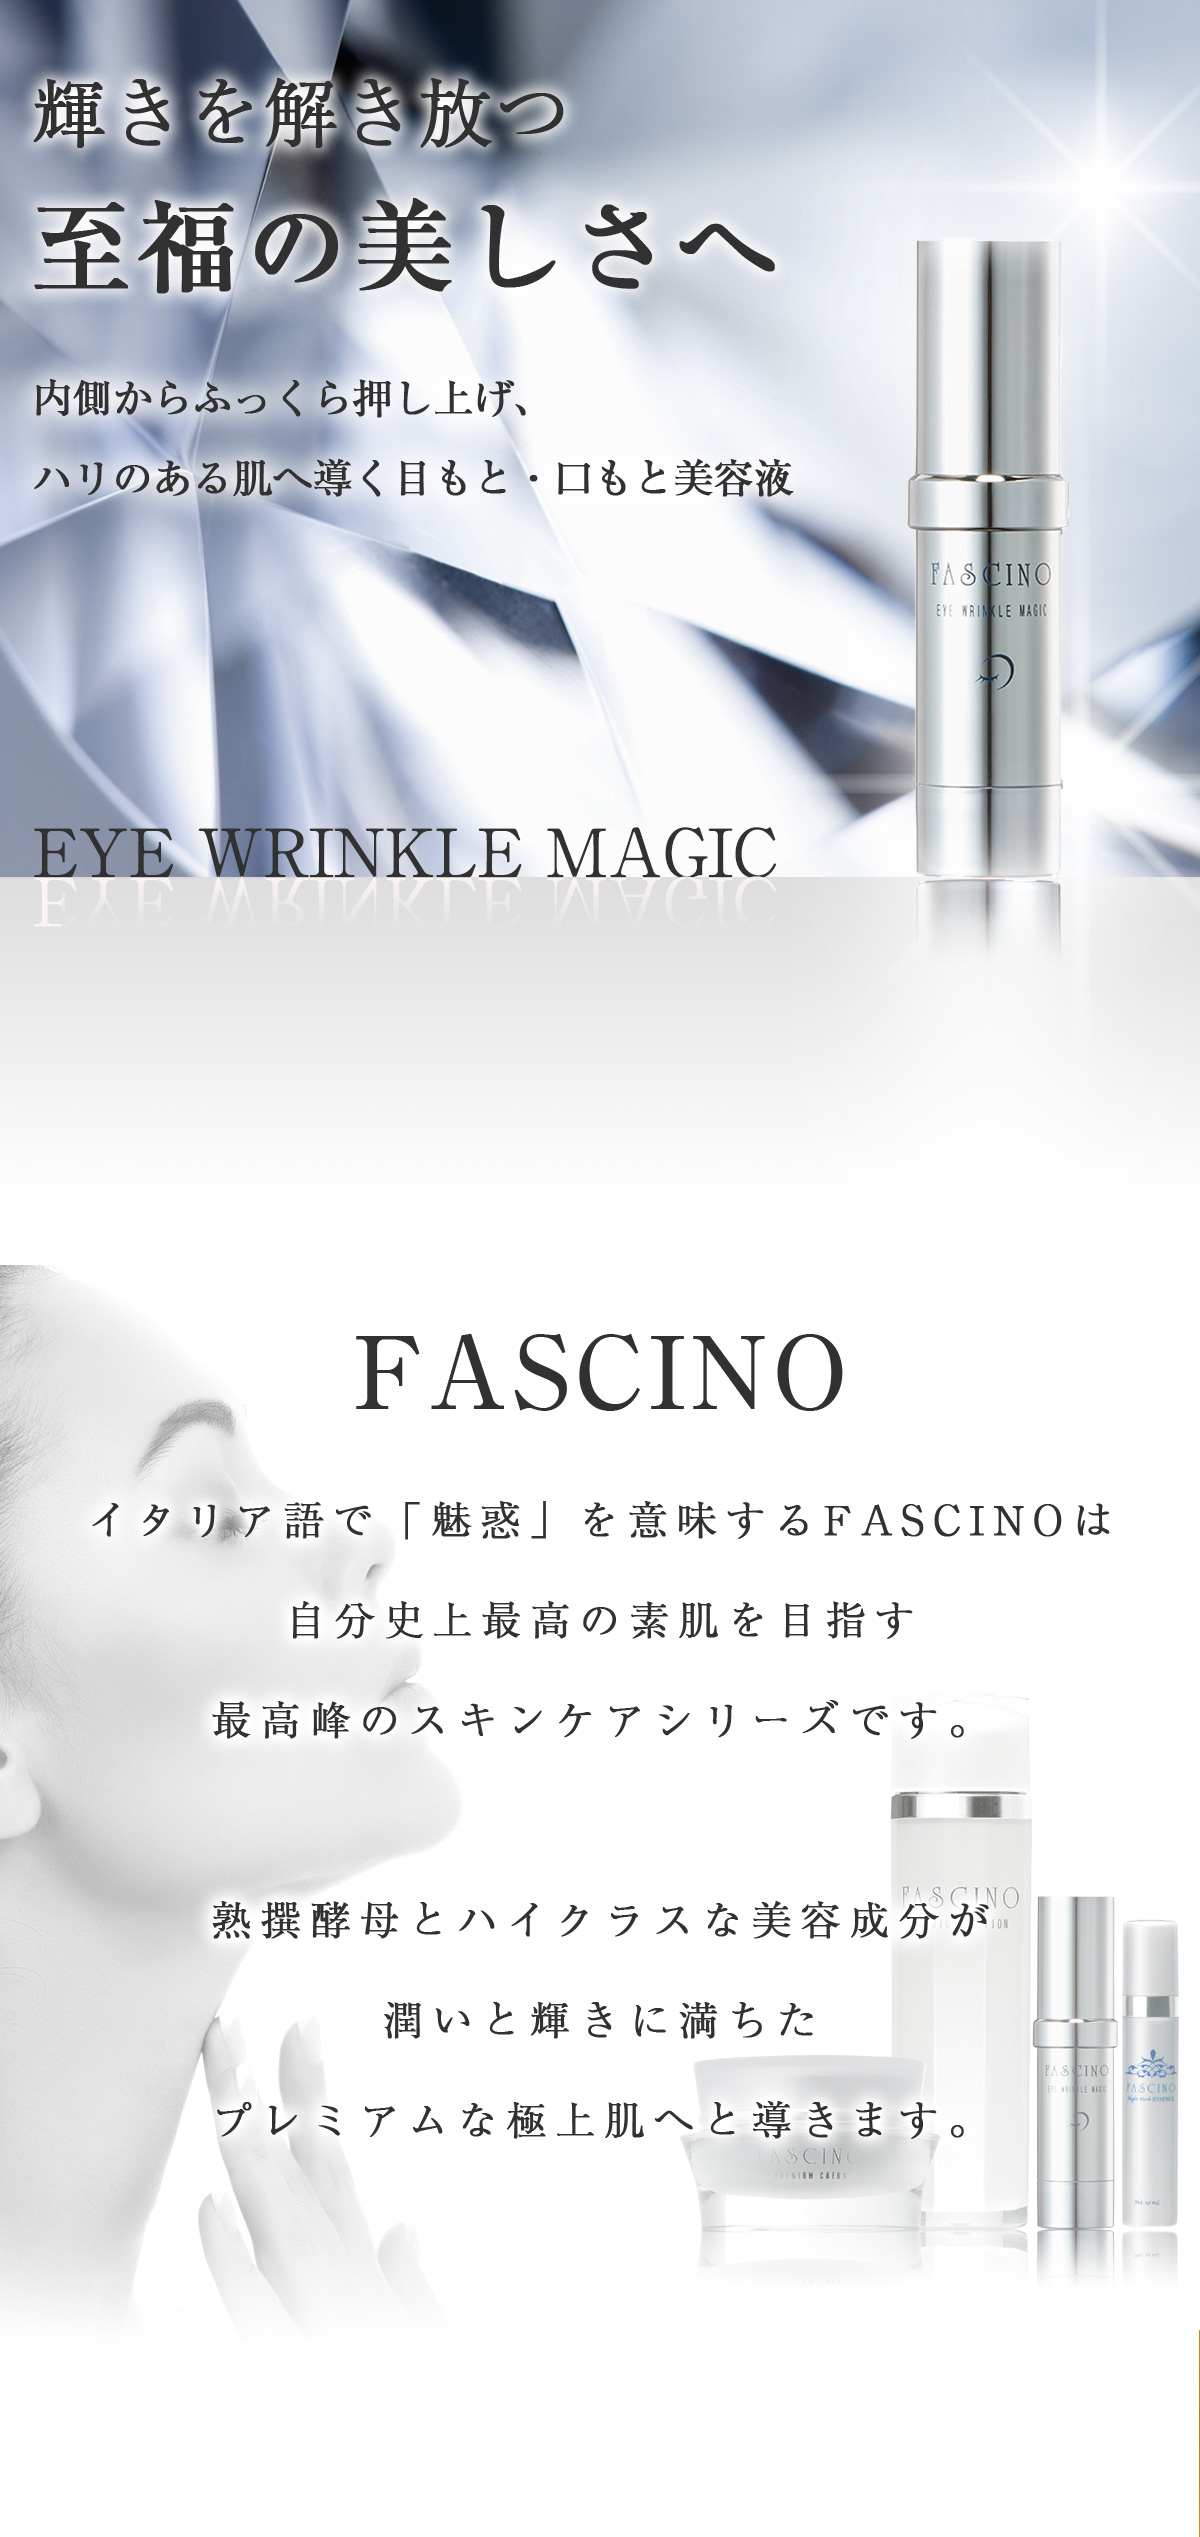 ファシーノ プレミアムローション 商品情報 Fascino Premium Lotion